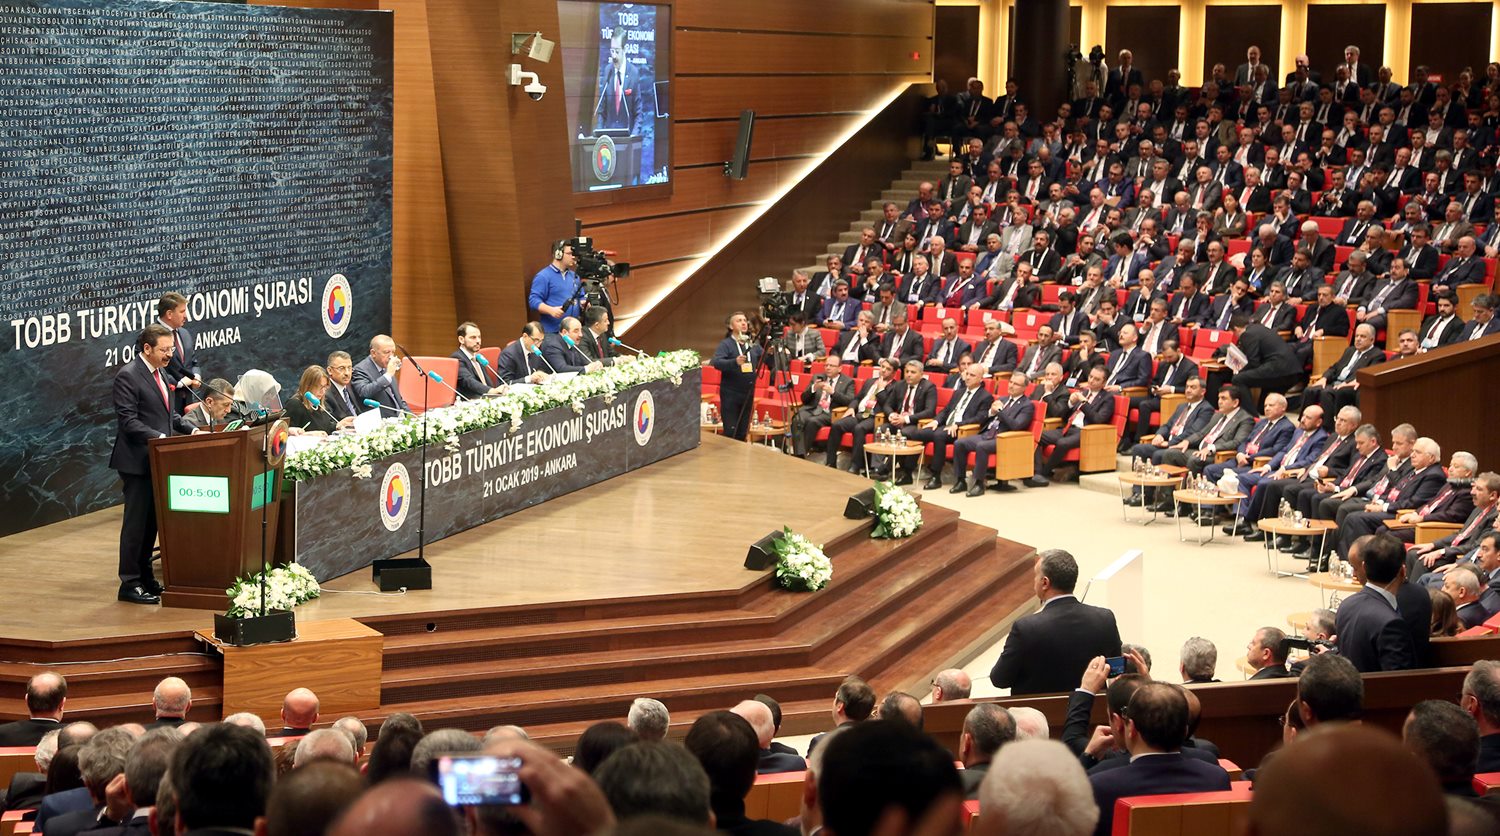 Başkanlar Bulut ve Doğan Türkiye Ekonomi Şurası’na katıldı